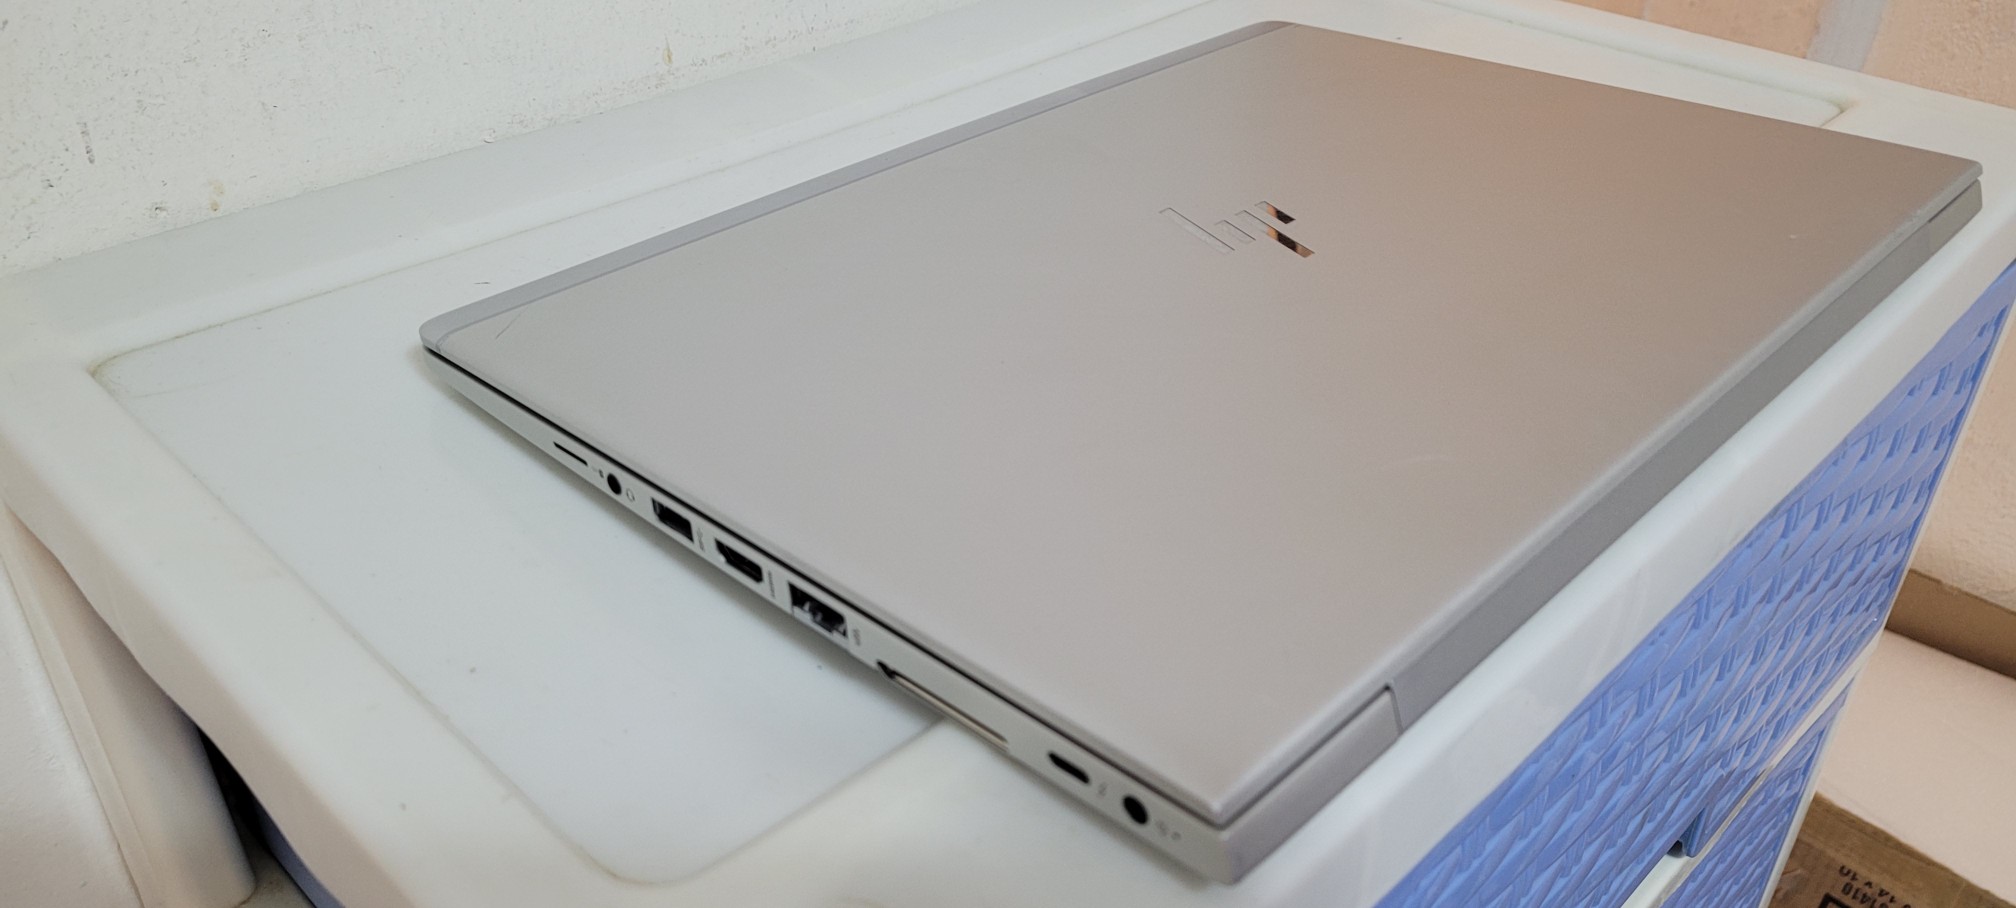 computadoras y laptops - Laptop hp Slim G3 14 Pulg Core i5 7ma Ram 8gb ddr4 Disco 256gb SSD HDMI 2